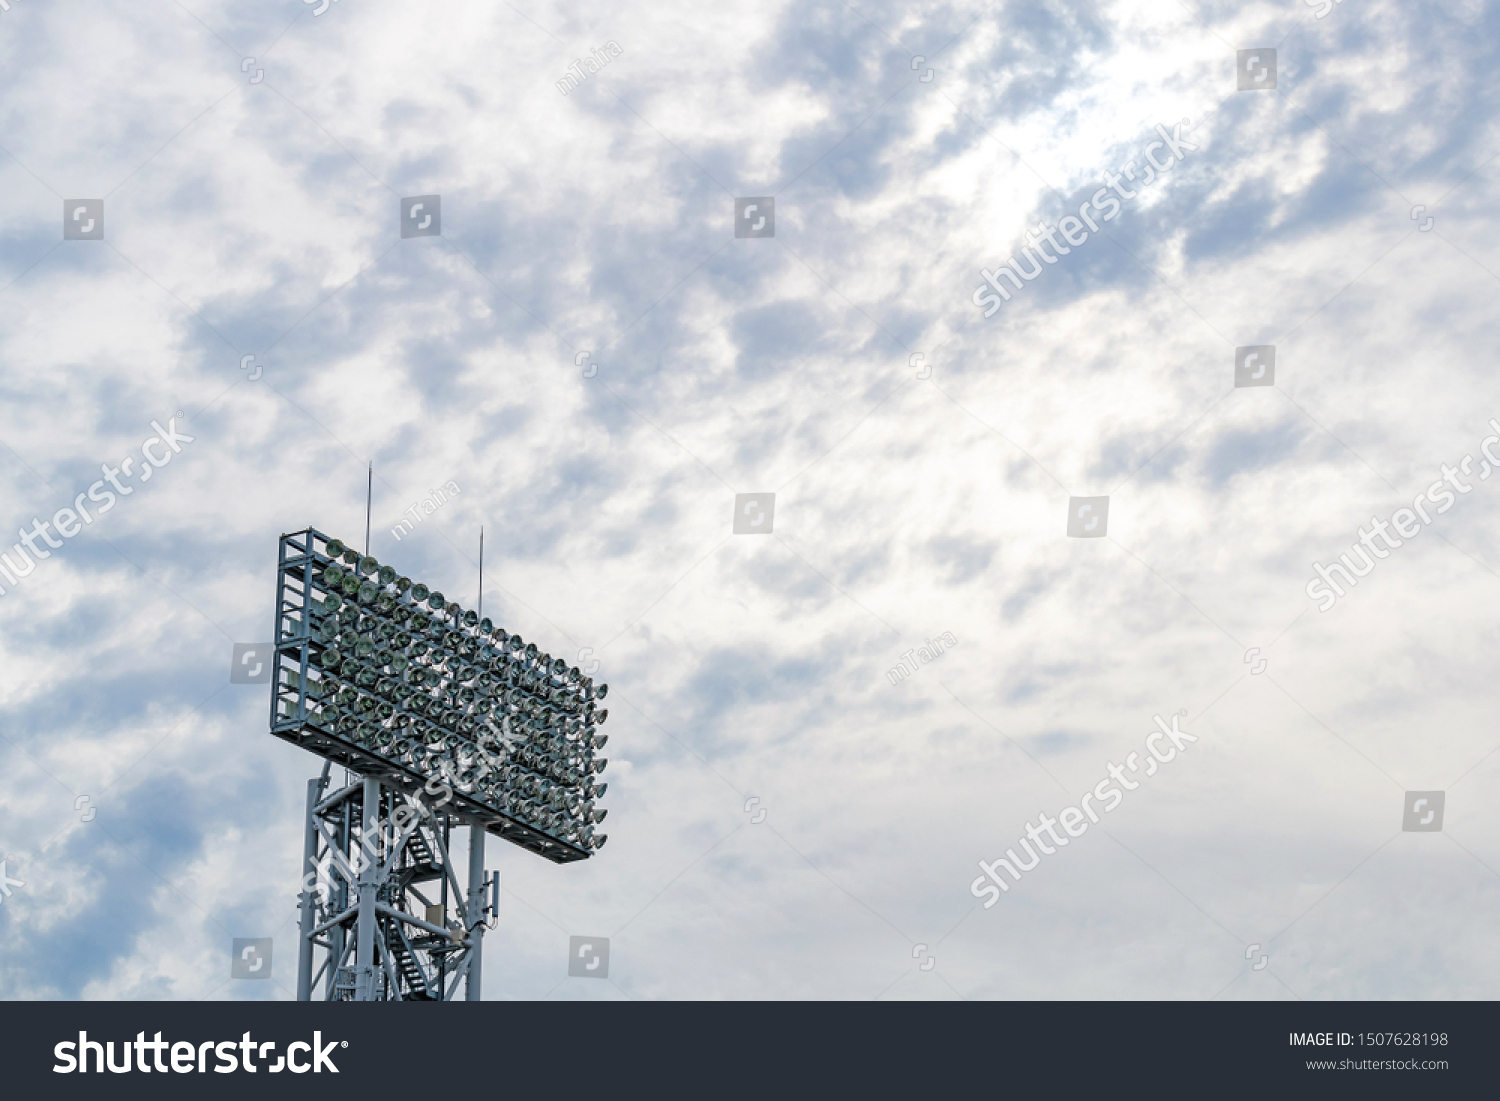 Illumination tower of the baseball stadium #1507628198